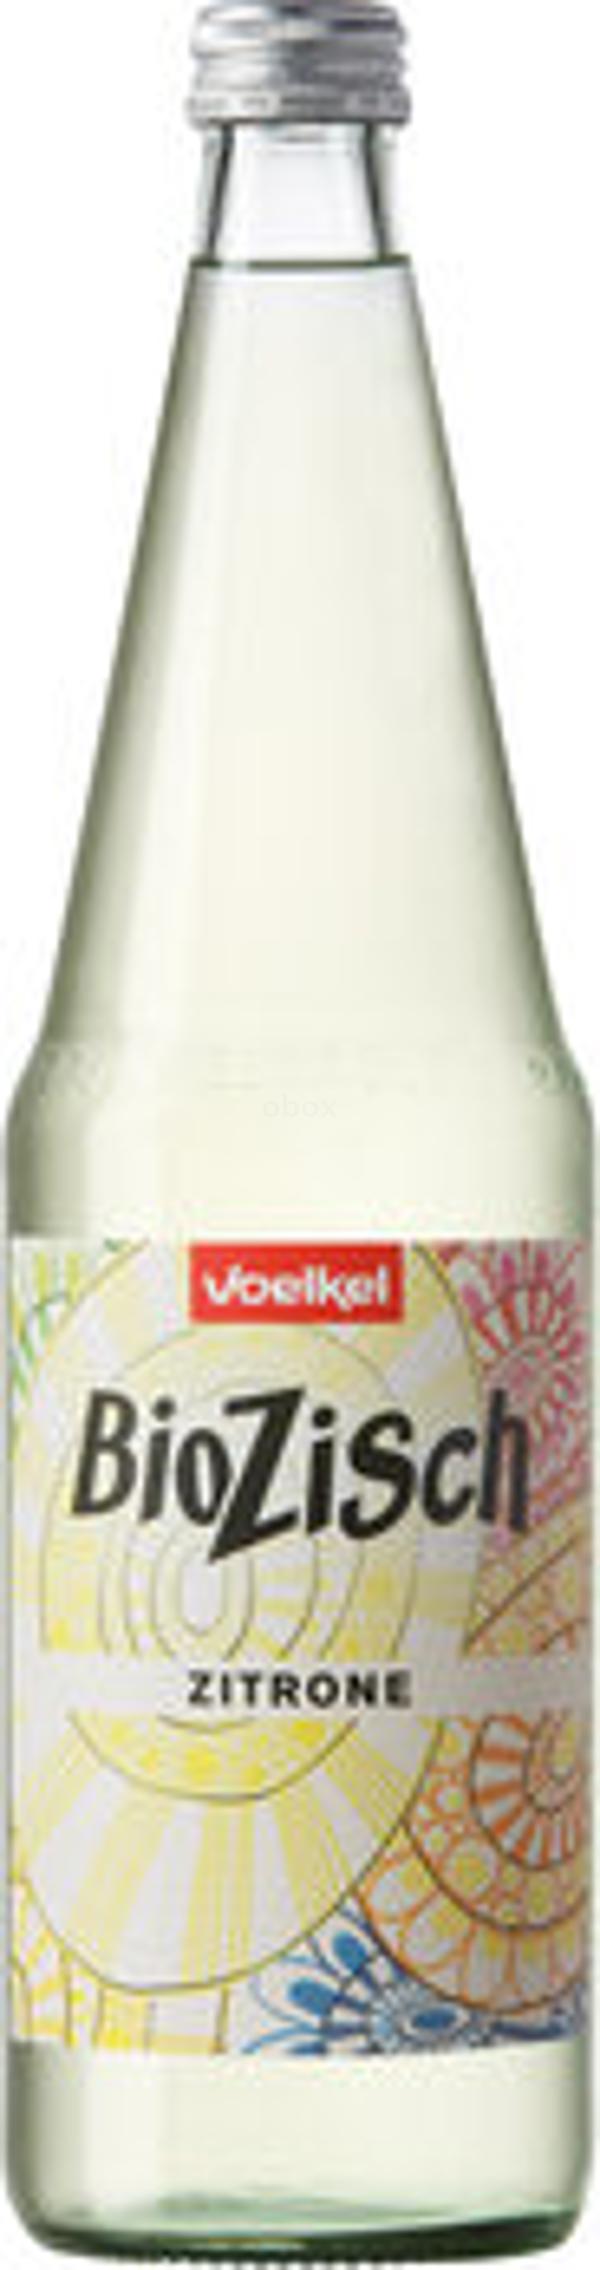 Produktfoto zu BioZisch Zitrone 0,7L